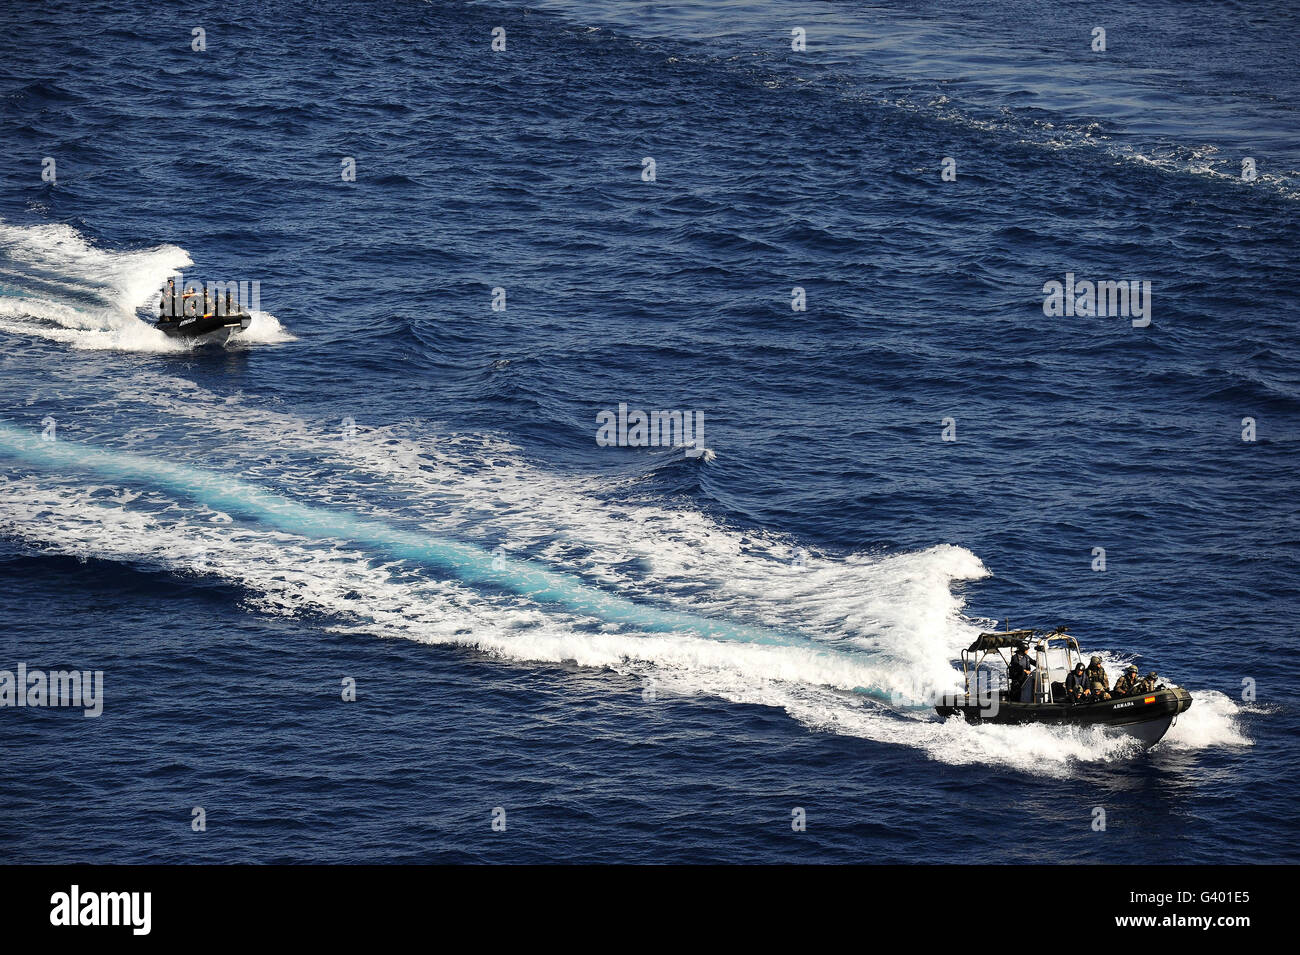 La marine espagnole deux bateaux gonflables à coque striée à haute vitesse de croisière dans la mer Méditerranée. Banque D'Images